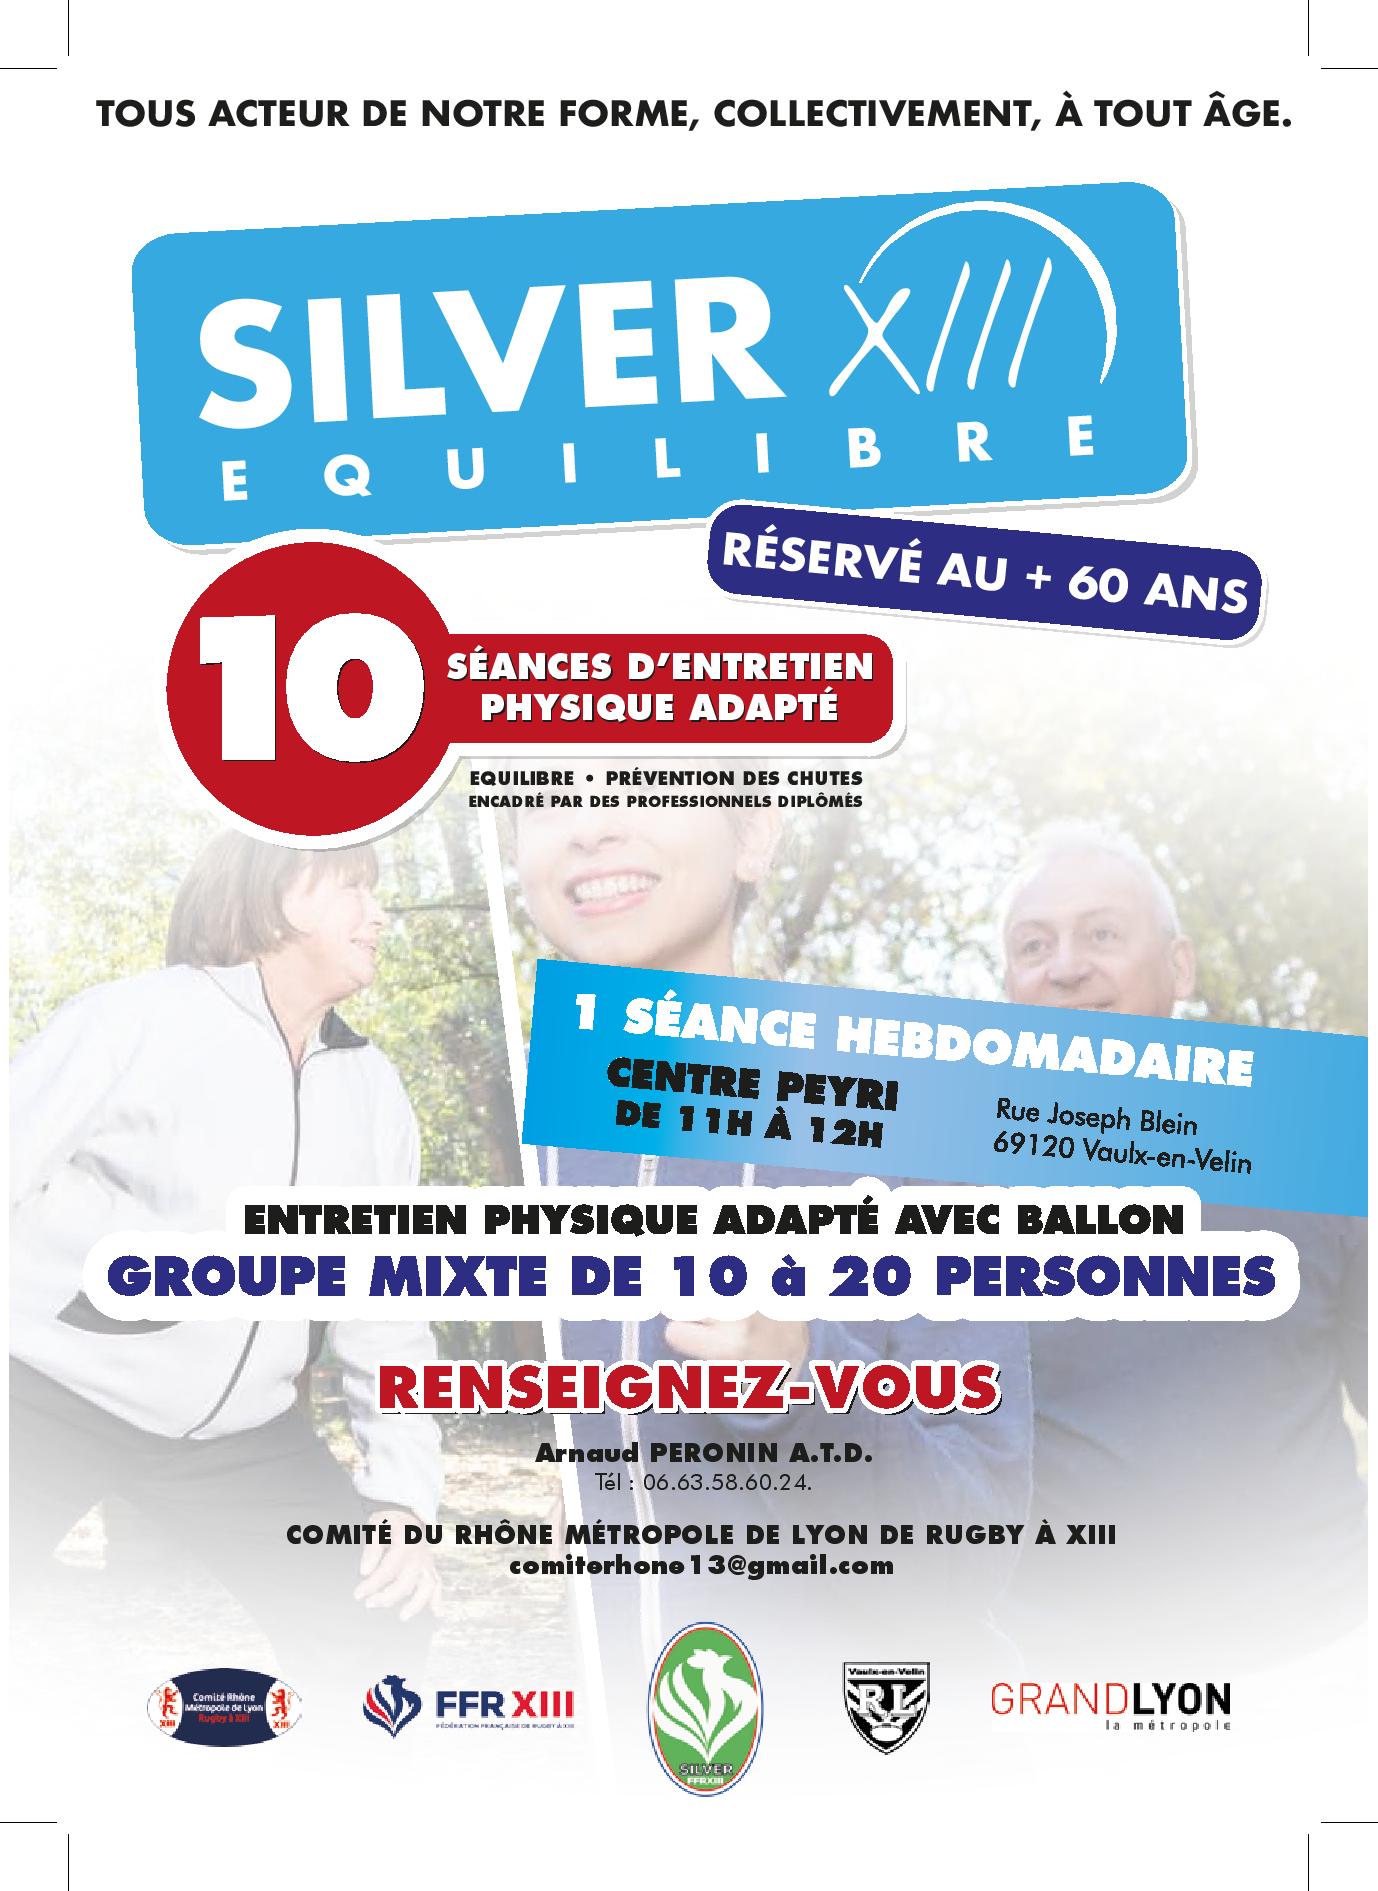 VAULX-EN-VELIN | Activités « Silver XIII » au centre social Peyri dès le 10 novembre